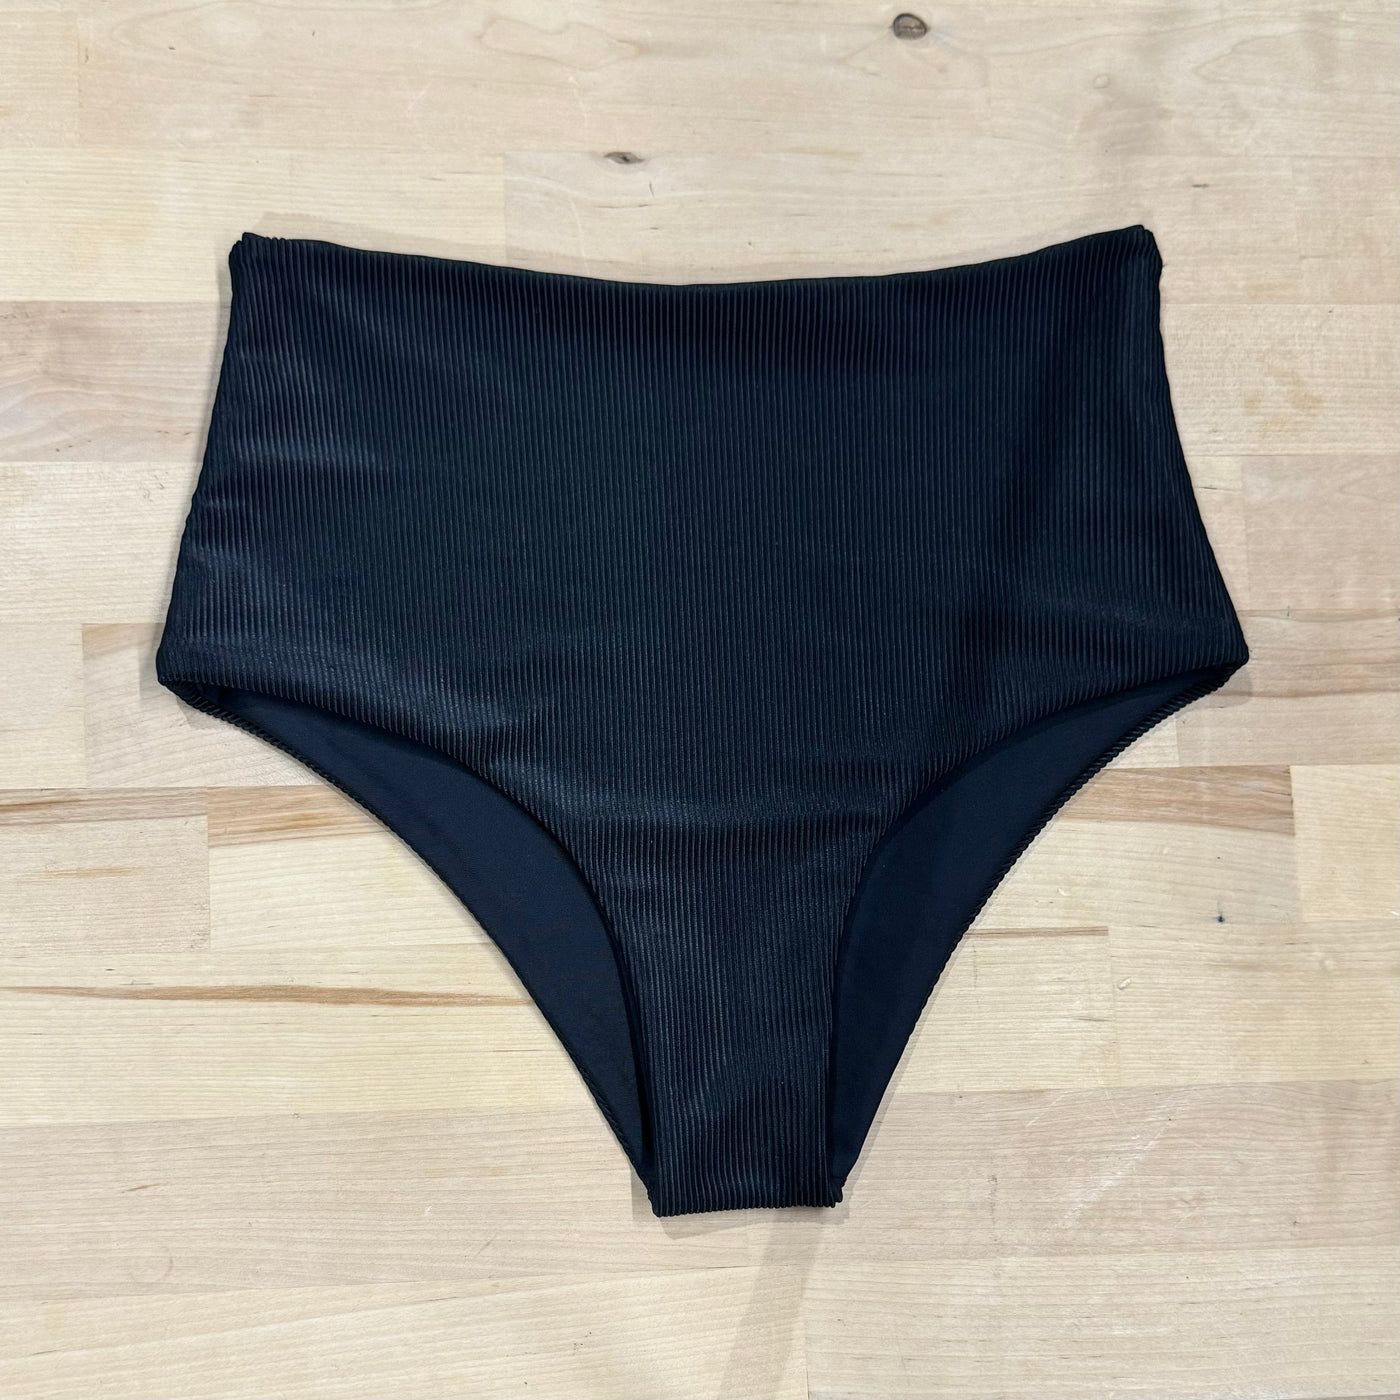 HIGH TIDE Bikini Bottom in Ribbed Black